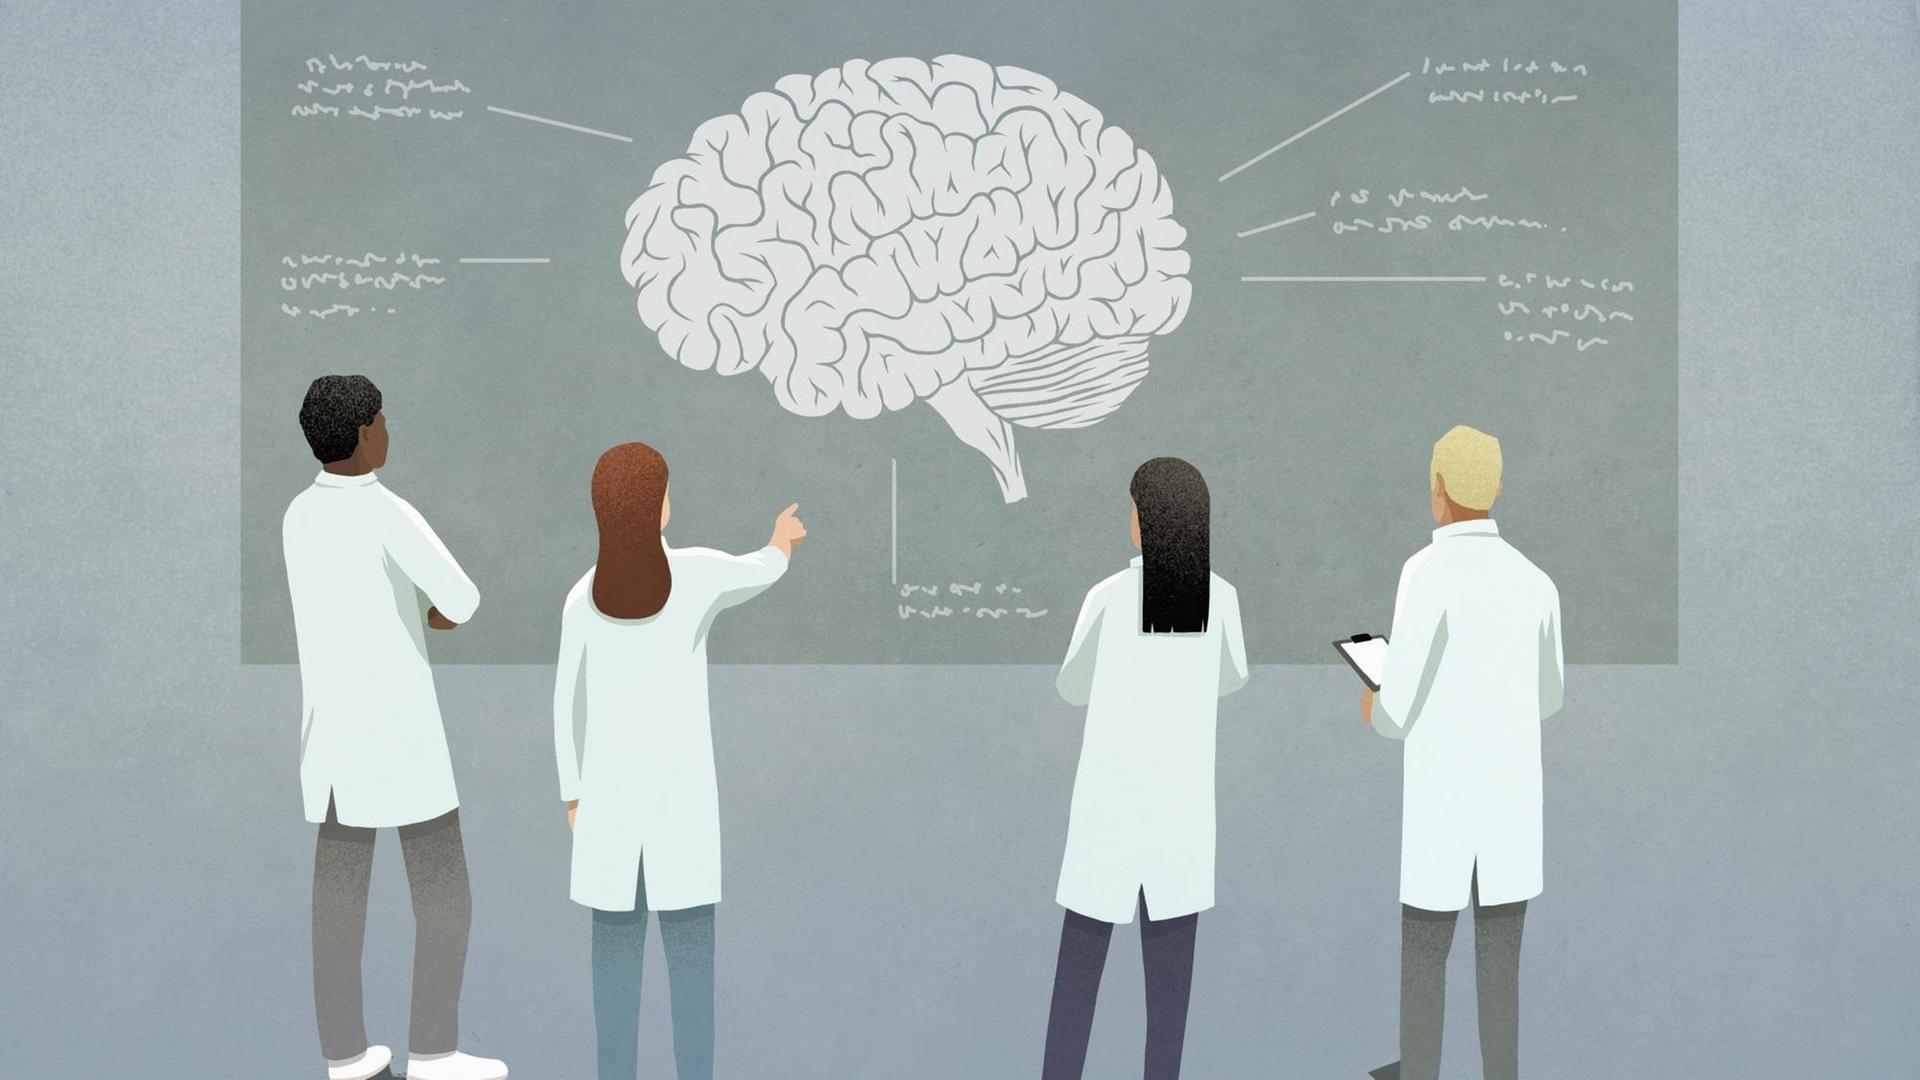 Wissenschaftler diskutieren ein Gehirndiagramm. (Illustration)